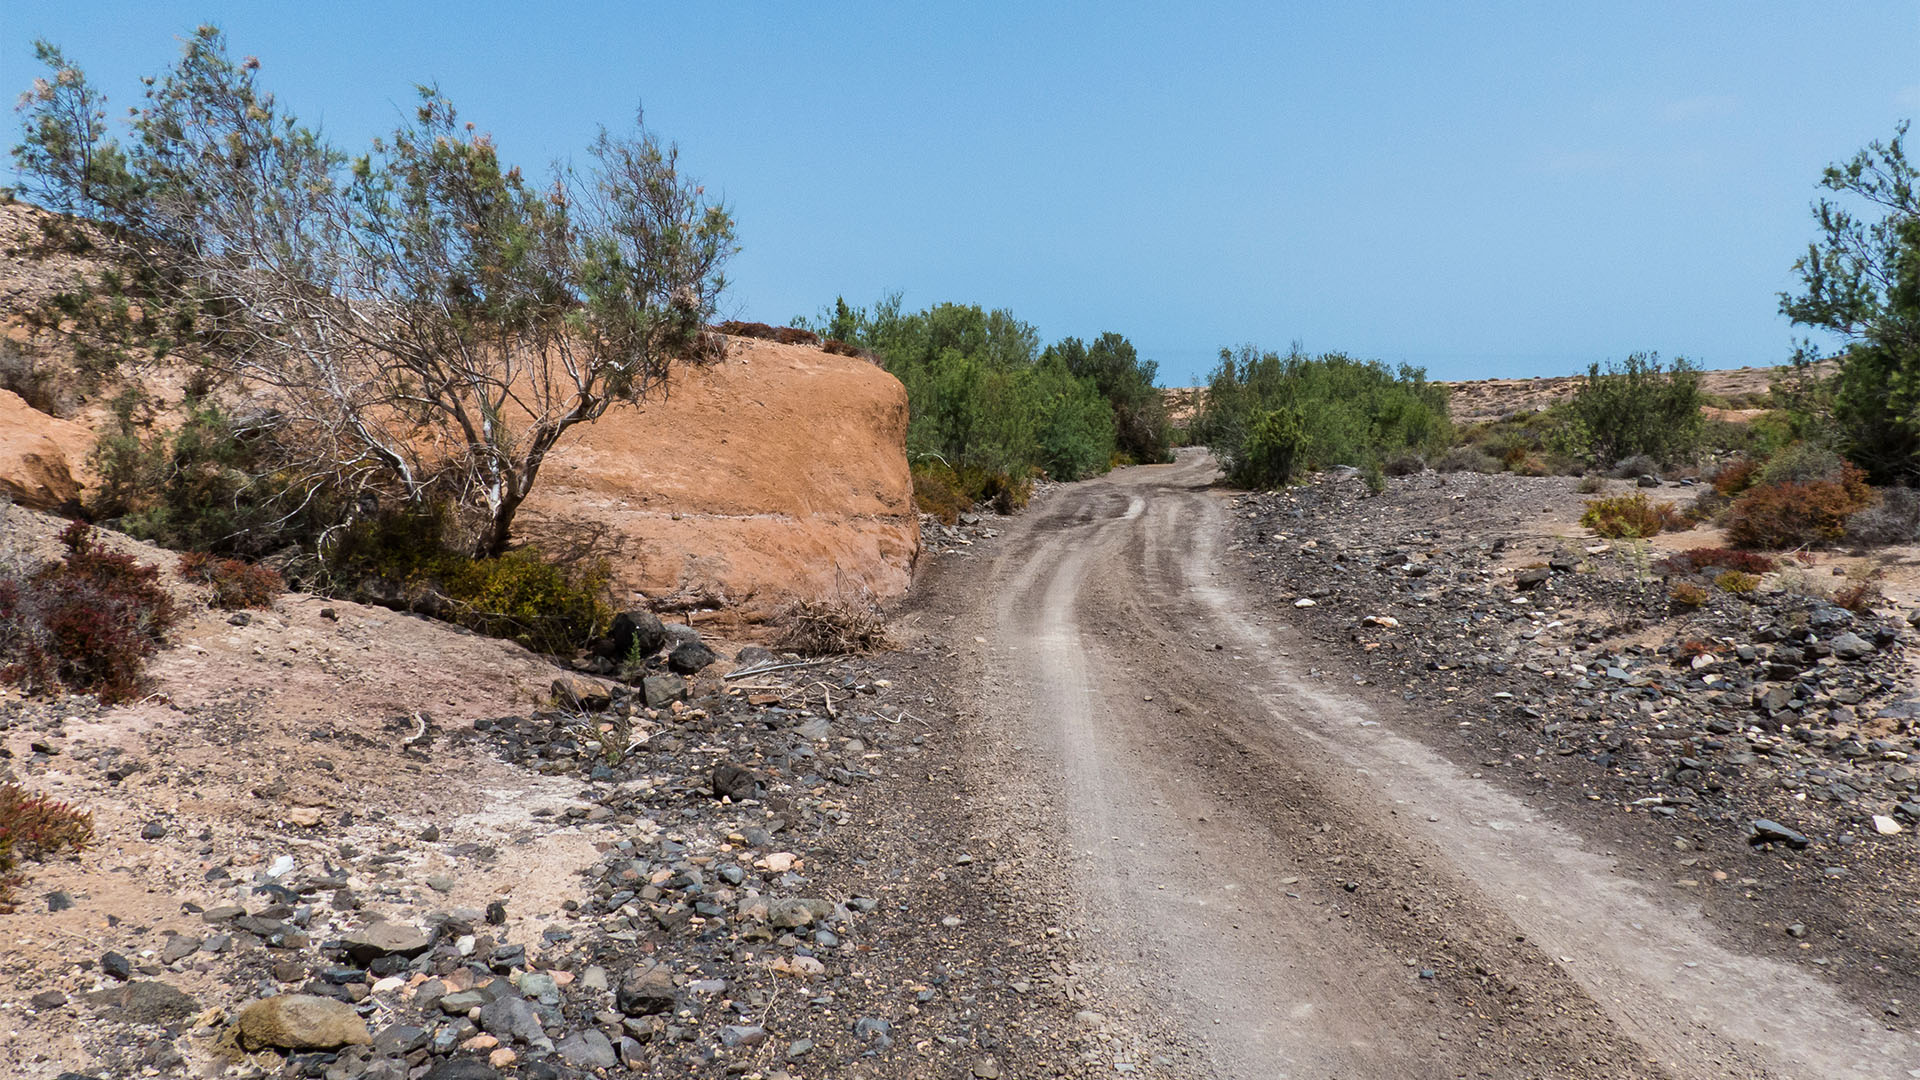 Wandern + Trekking auf Fuerteventura: Von Tindaya durch den Barranco Esquinzo nach El Cotillo.